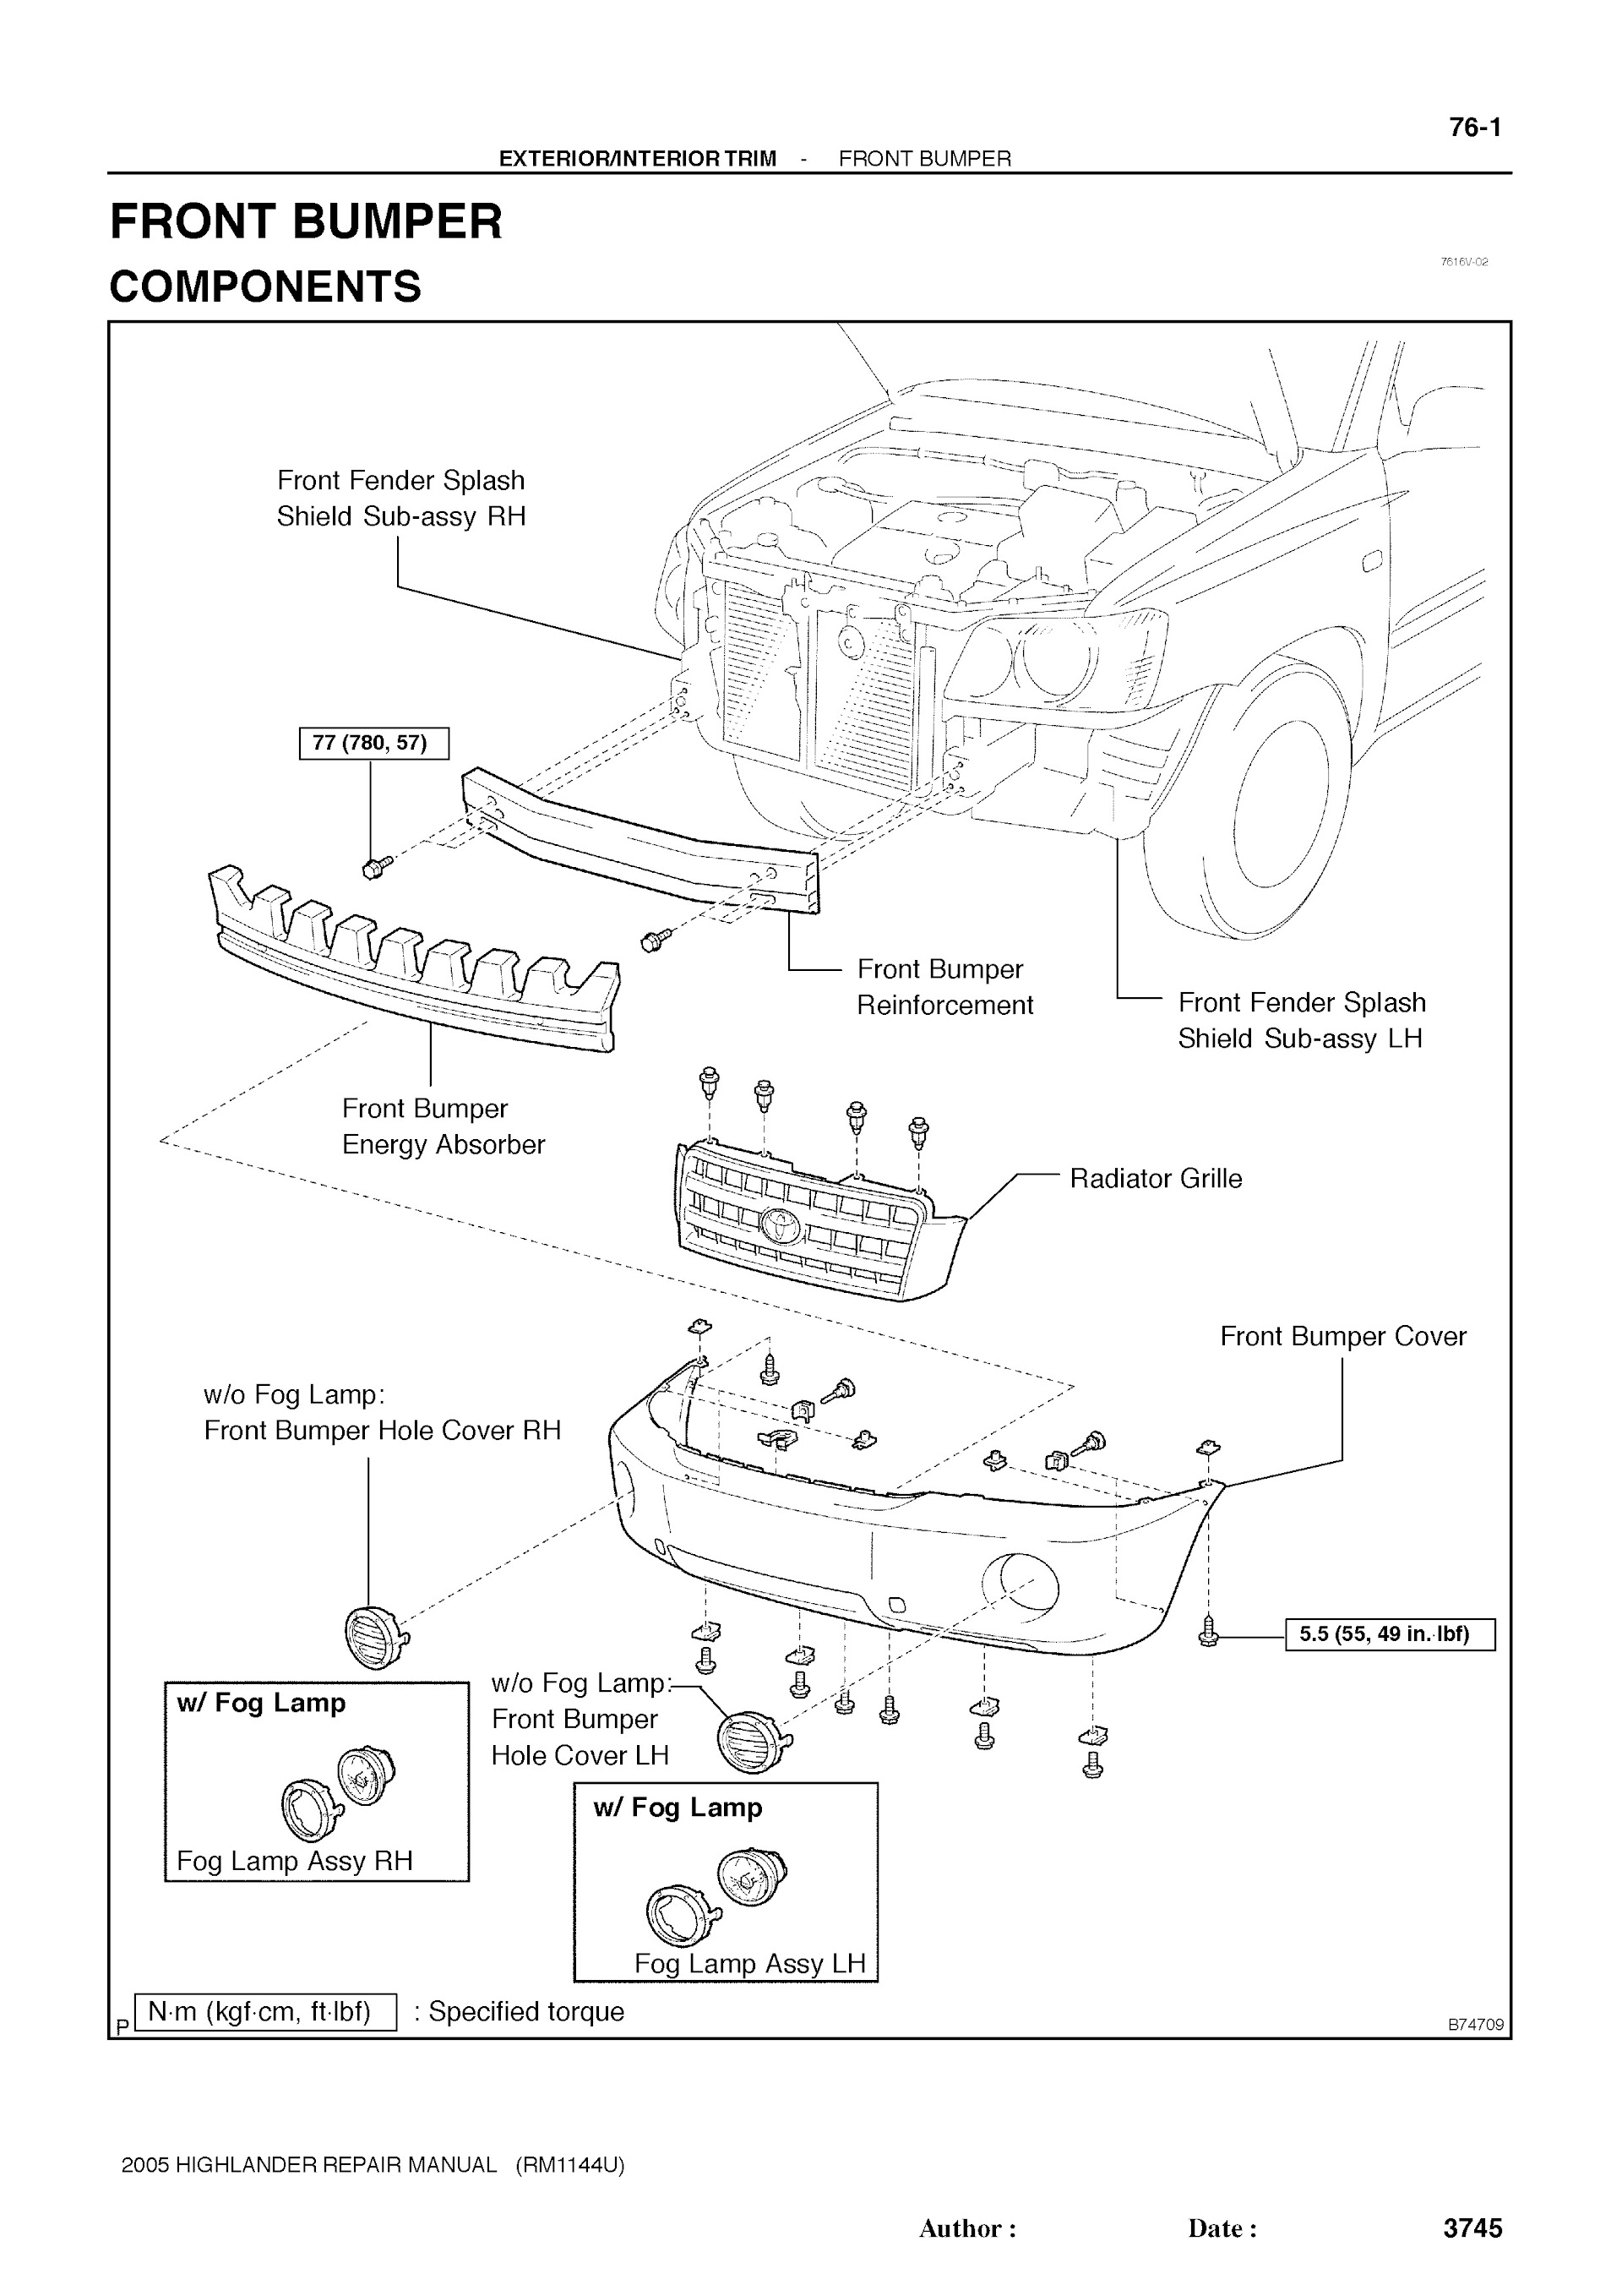 Download 2001-2007 Toyota Highlander Repair Manual.